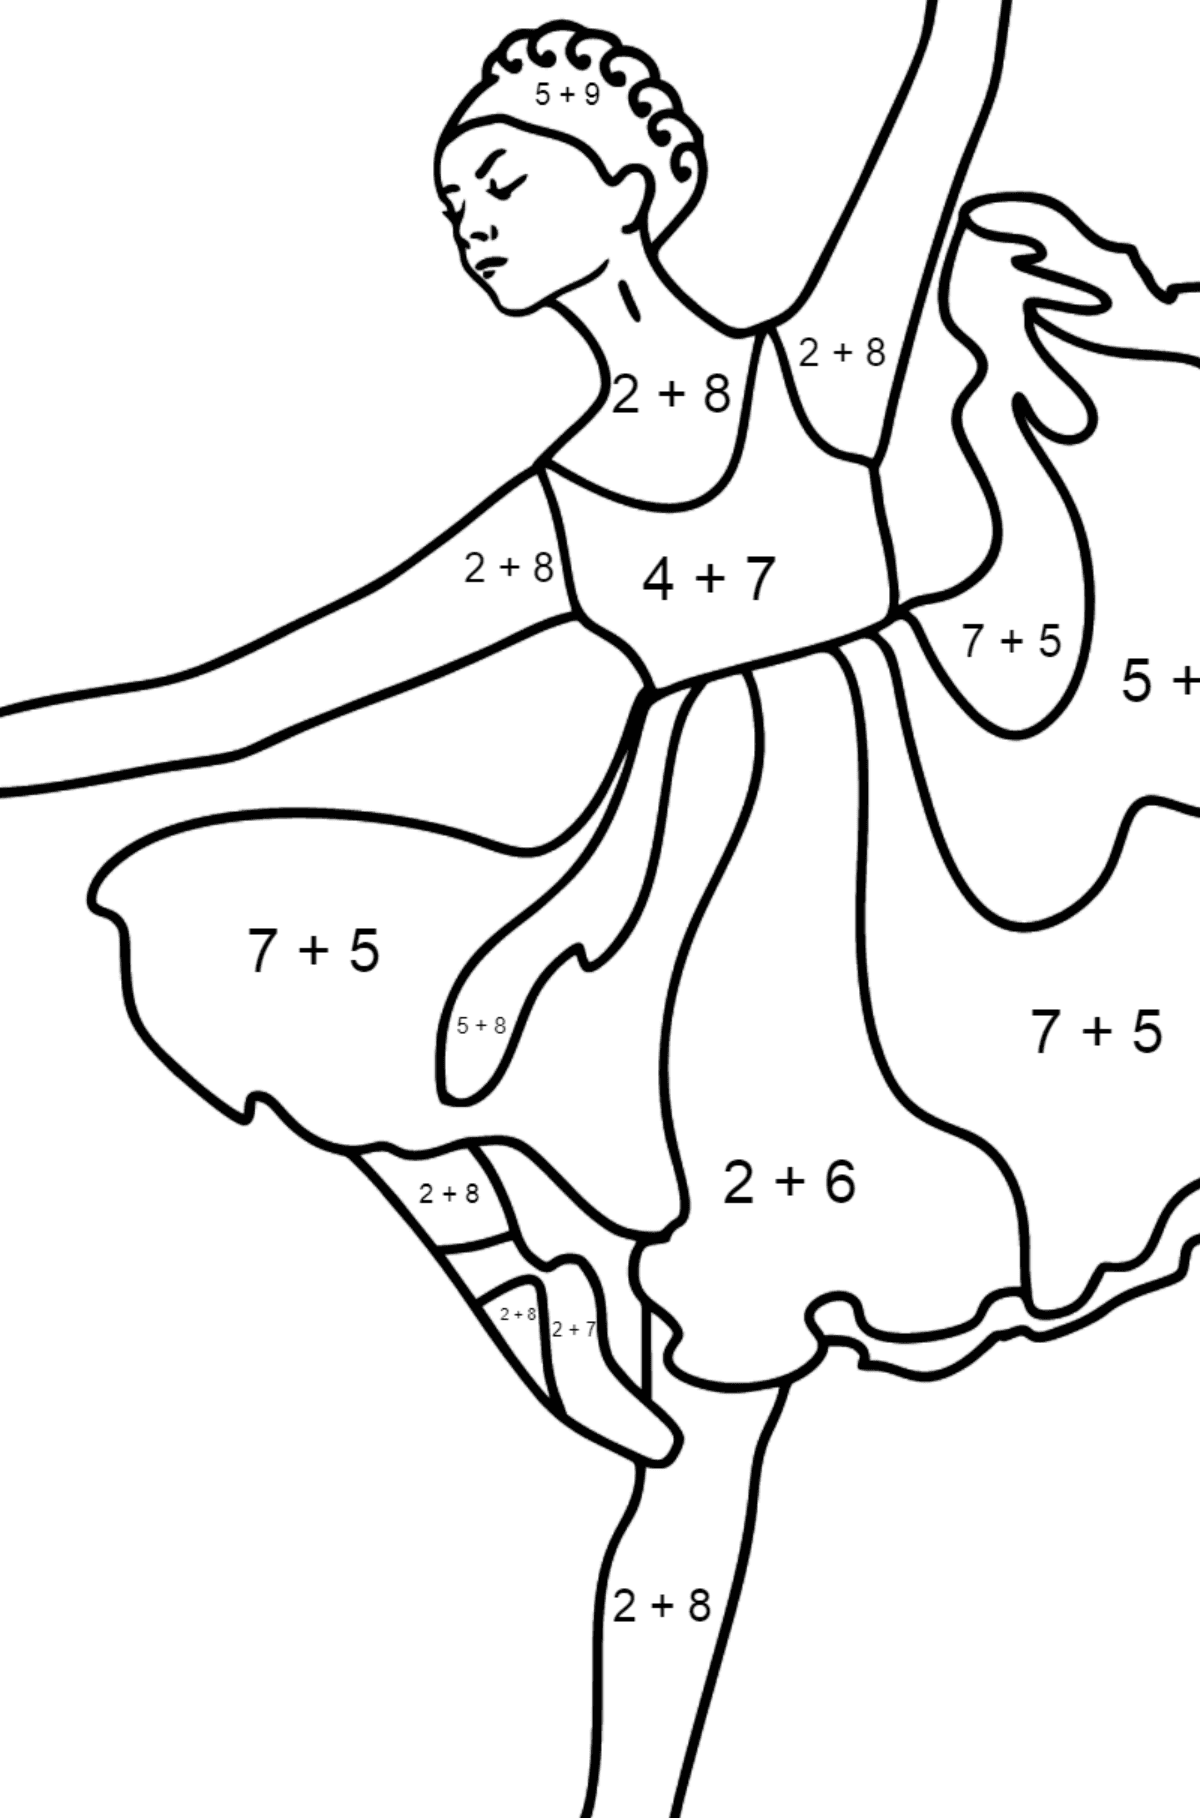 Dibujo para colorear - Bailarina con vestido lila - Colorear con Matemáticas - Sumas para Niños